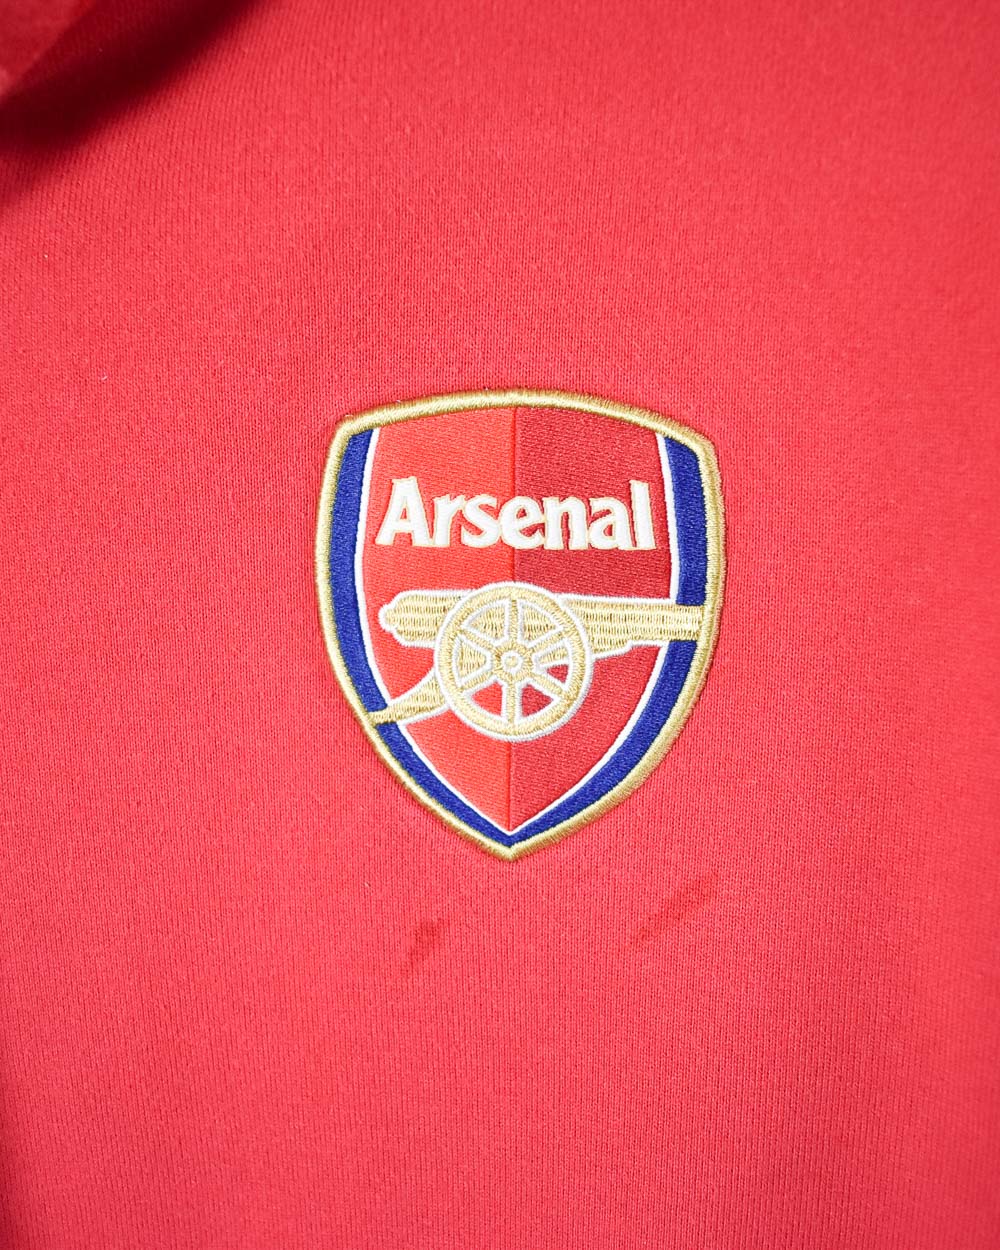 Red Nike  Arsenal FC Hoodie - Medium